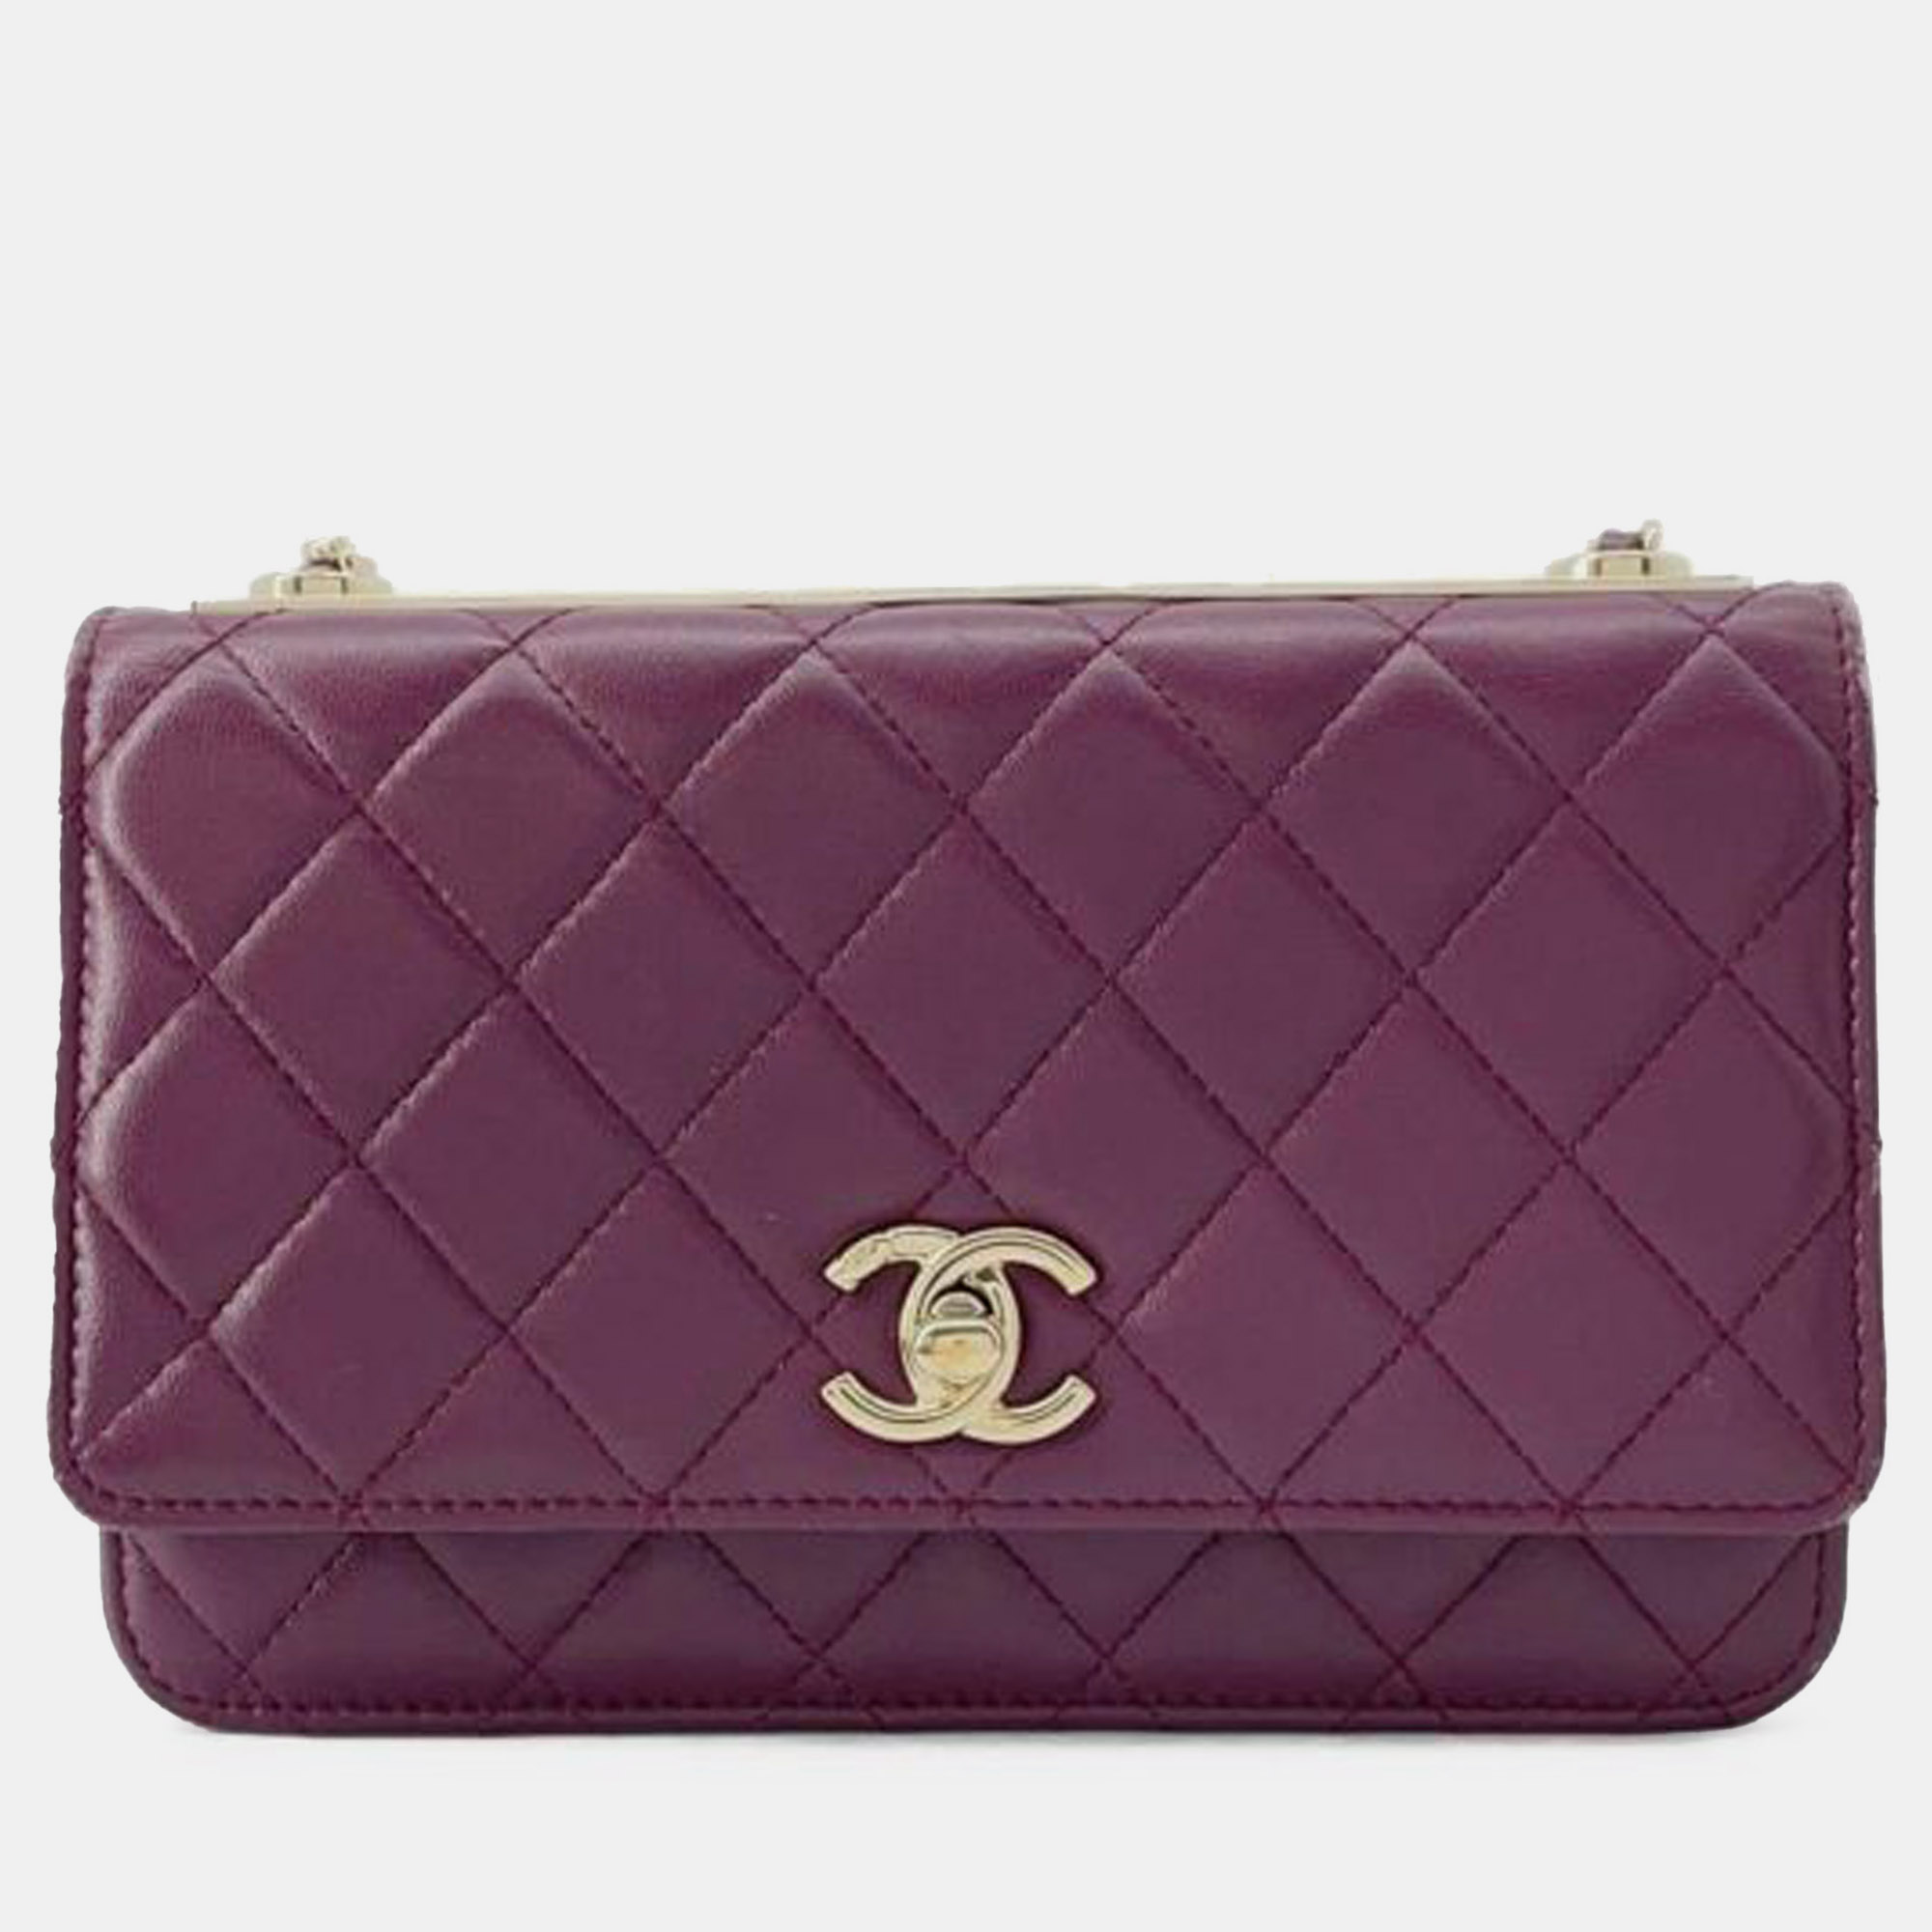 Chanel lambskin trendy cc wallet on chain